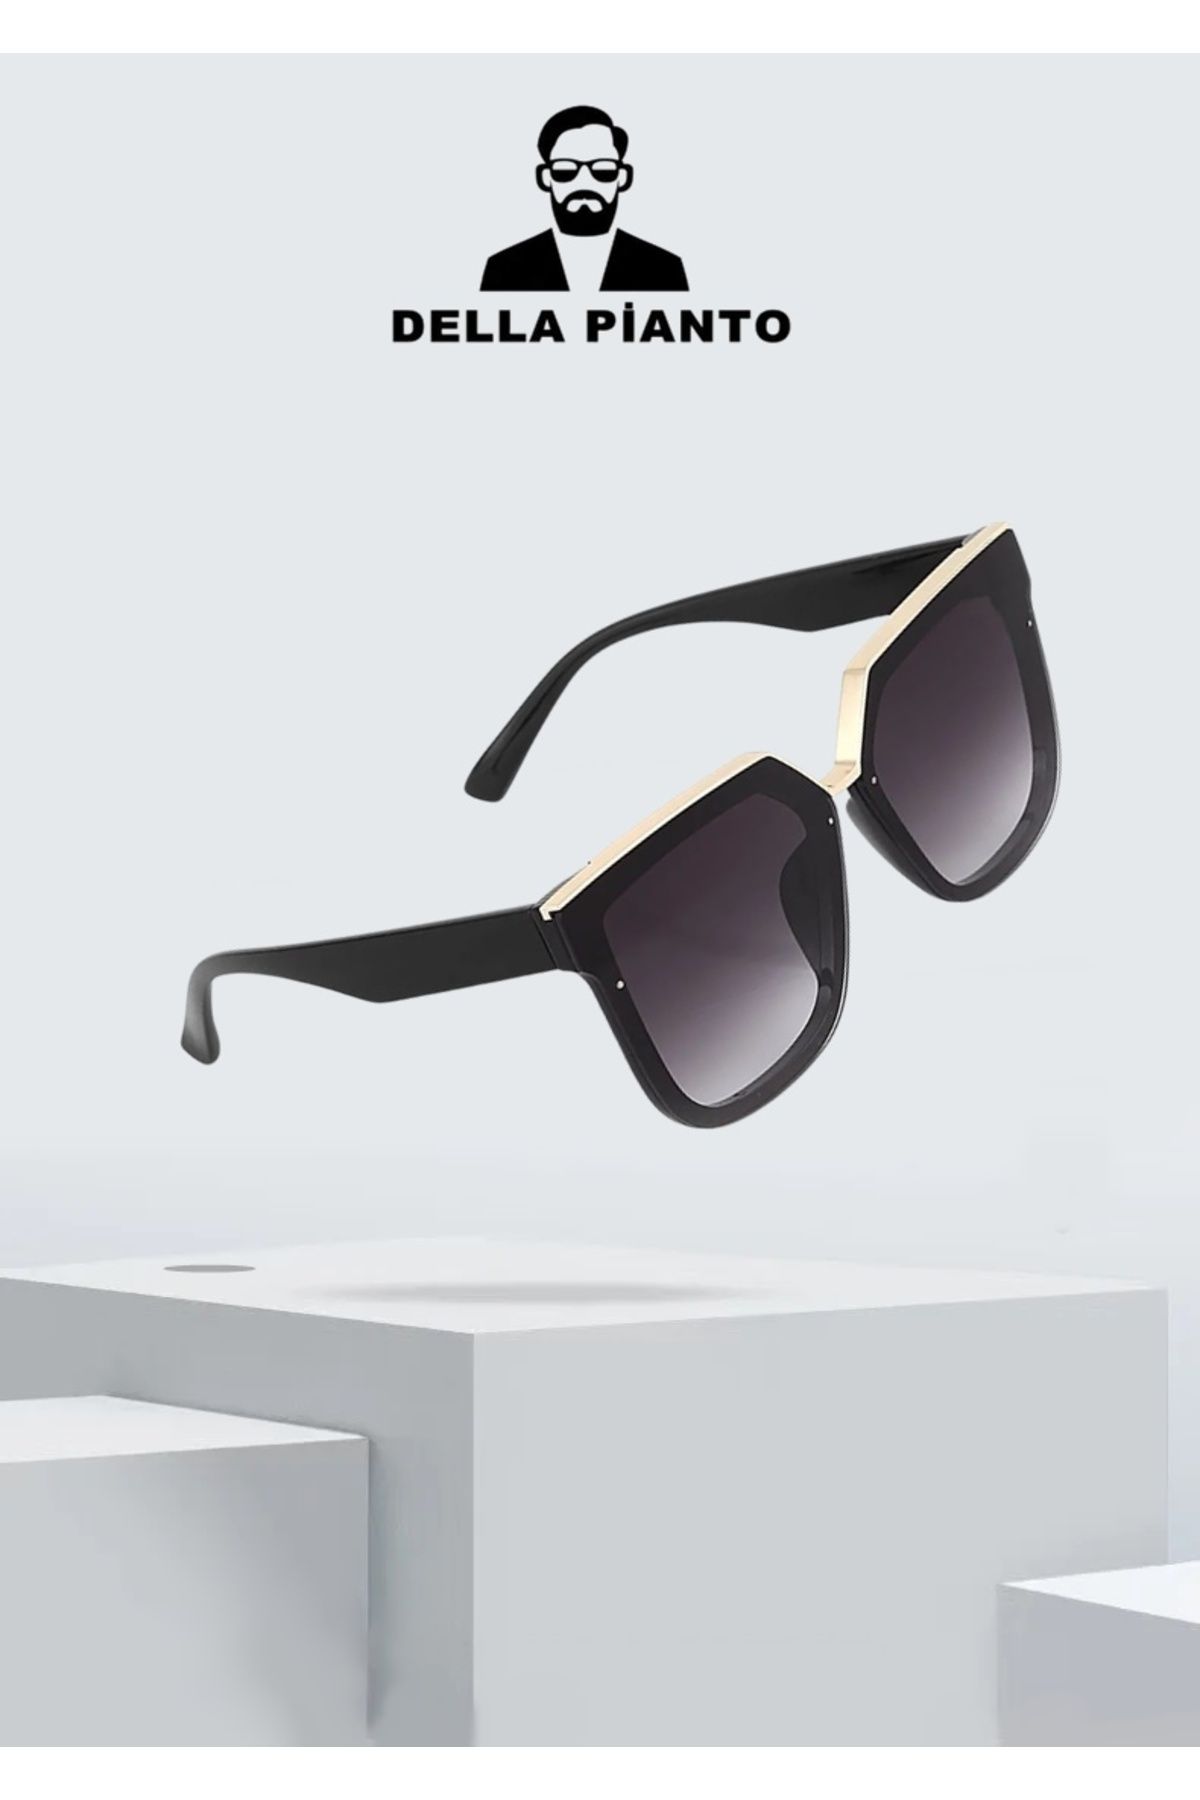 Della Pianto Kadın Oversize Siyah Güneş Gözlüğü